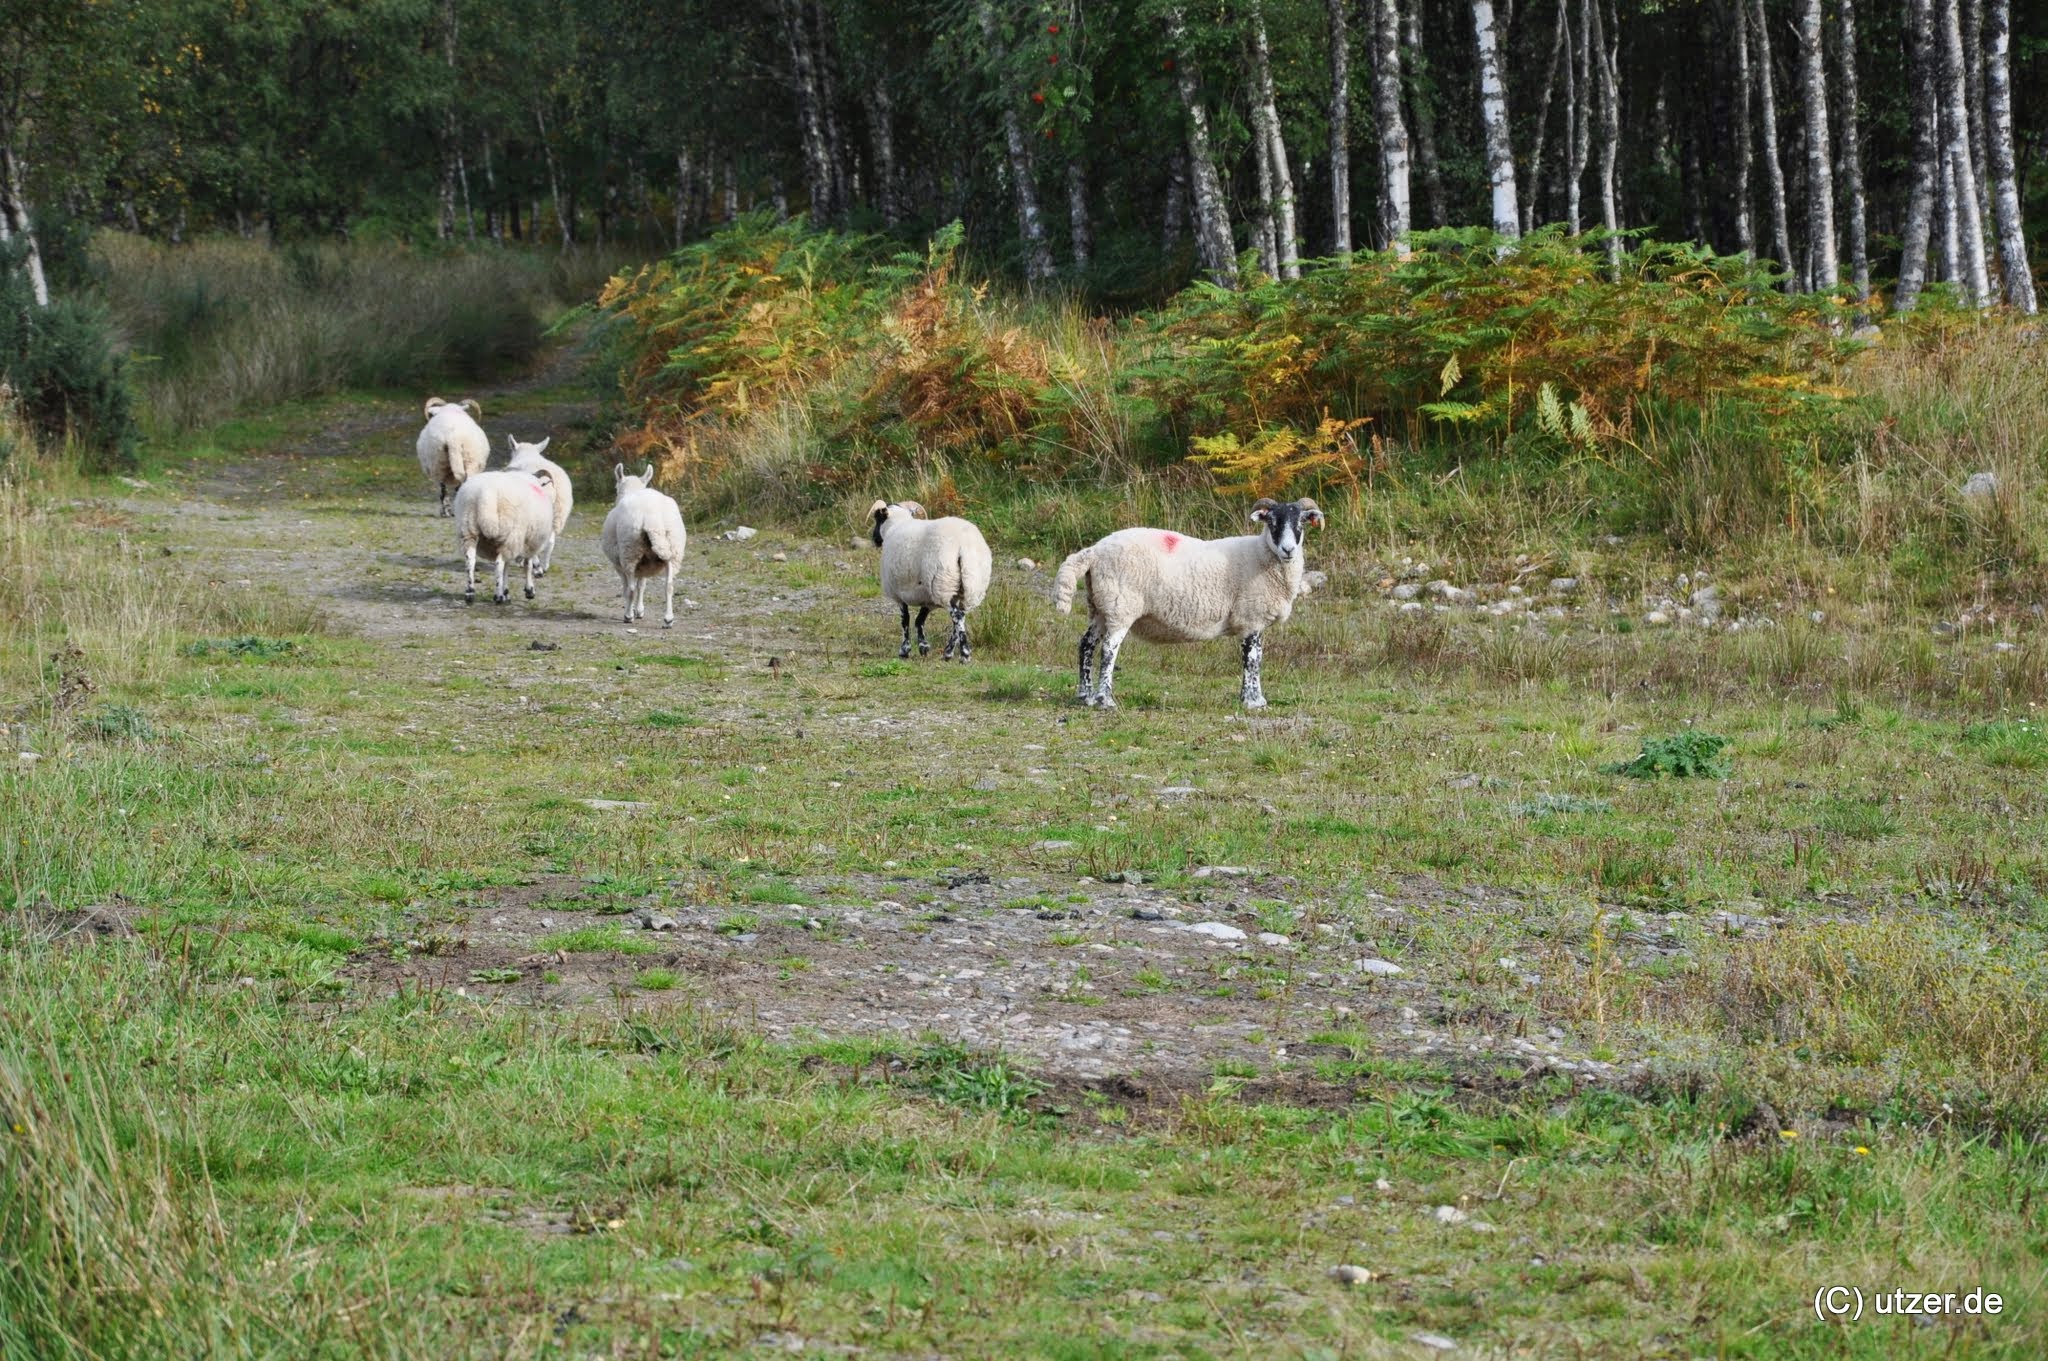 Schafe die vor uns flüchten, wir haben übrigens keinen Zaun oder dergleichen gefunden, die Schafe können also auch ins Dorf, sind dafür aber viel scheu.